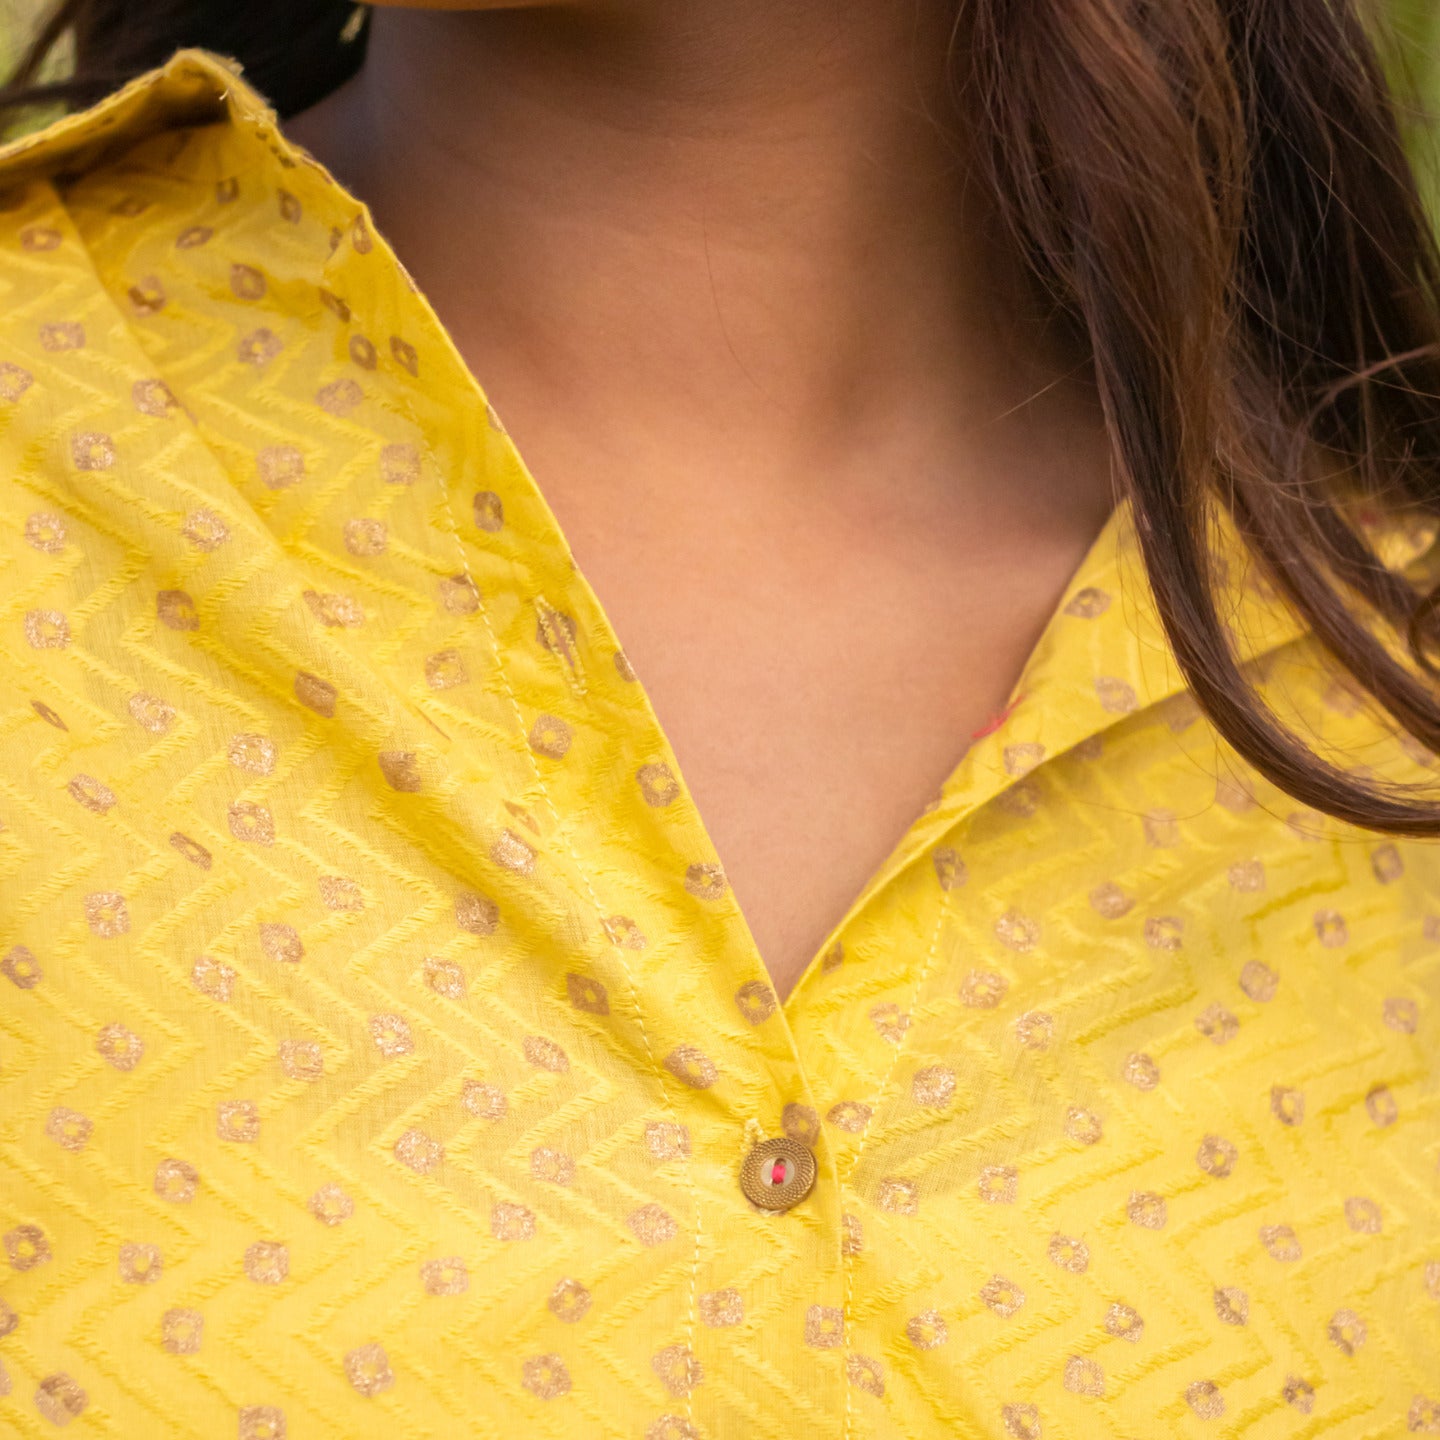 Women Block printed oversized shirt Yellow